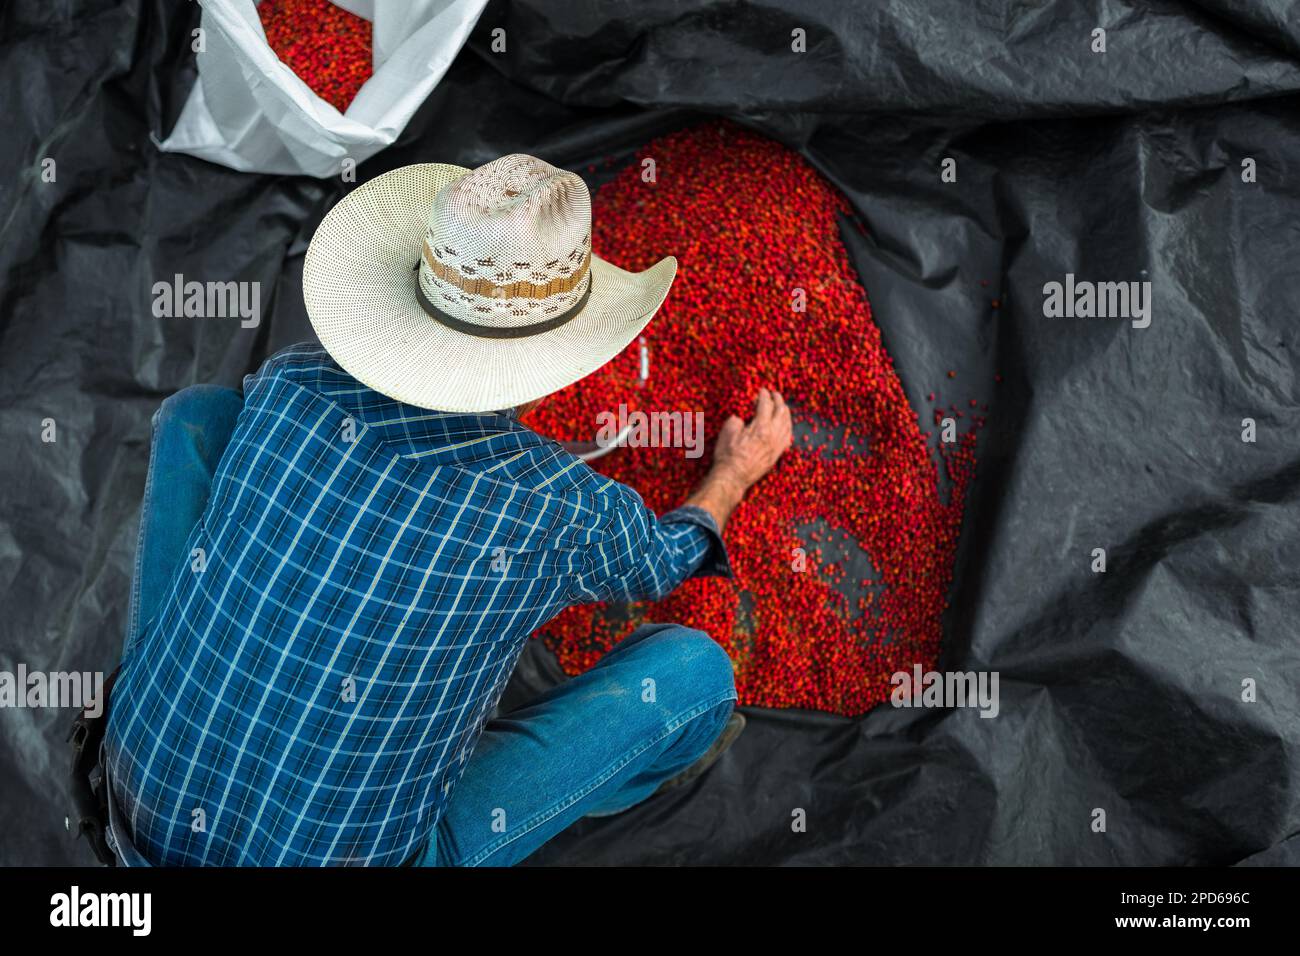 Un rancher messicano raccoglie peperoncini secchi al sole, una varietà selvatica di peperoncino, in un sacco in una fattoria vicino a Baviácora, sonora, Messico. Foto Stock